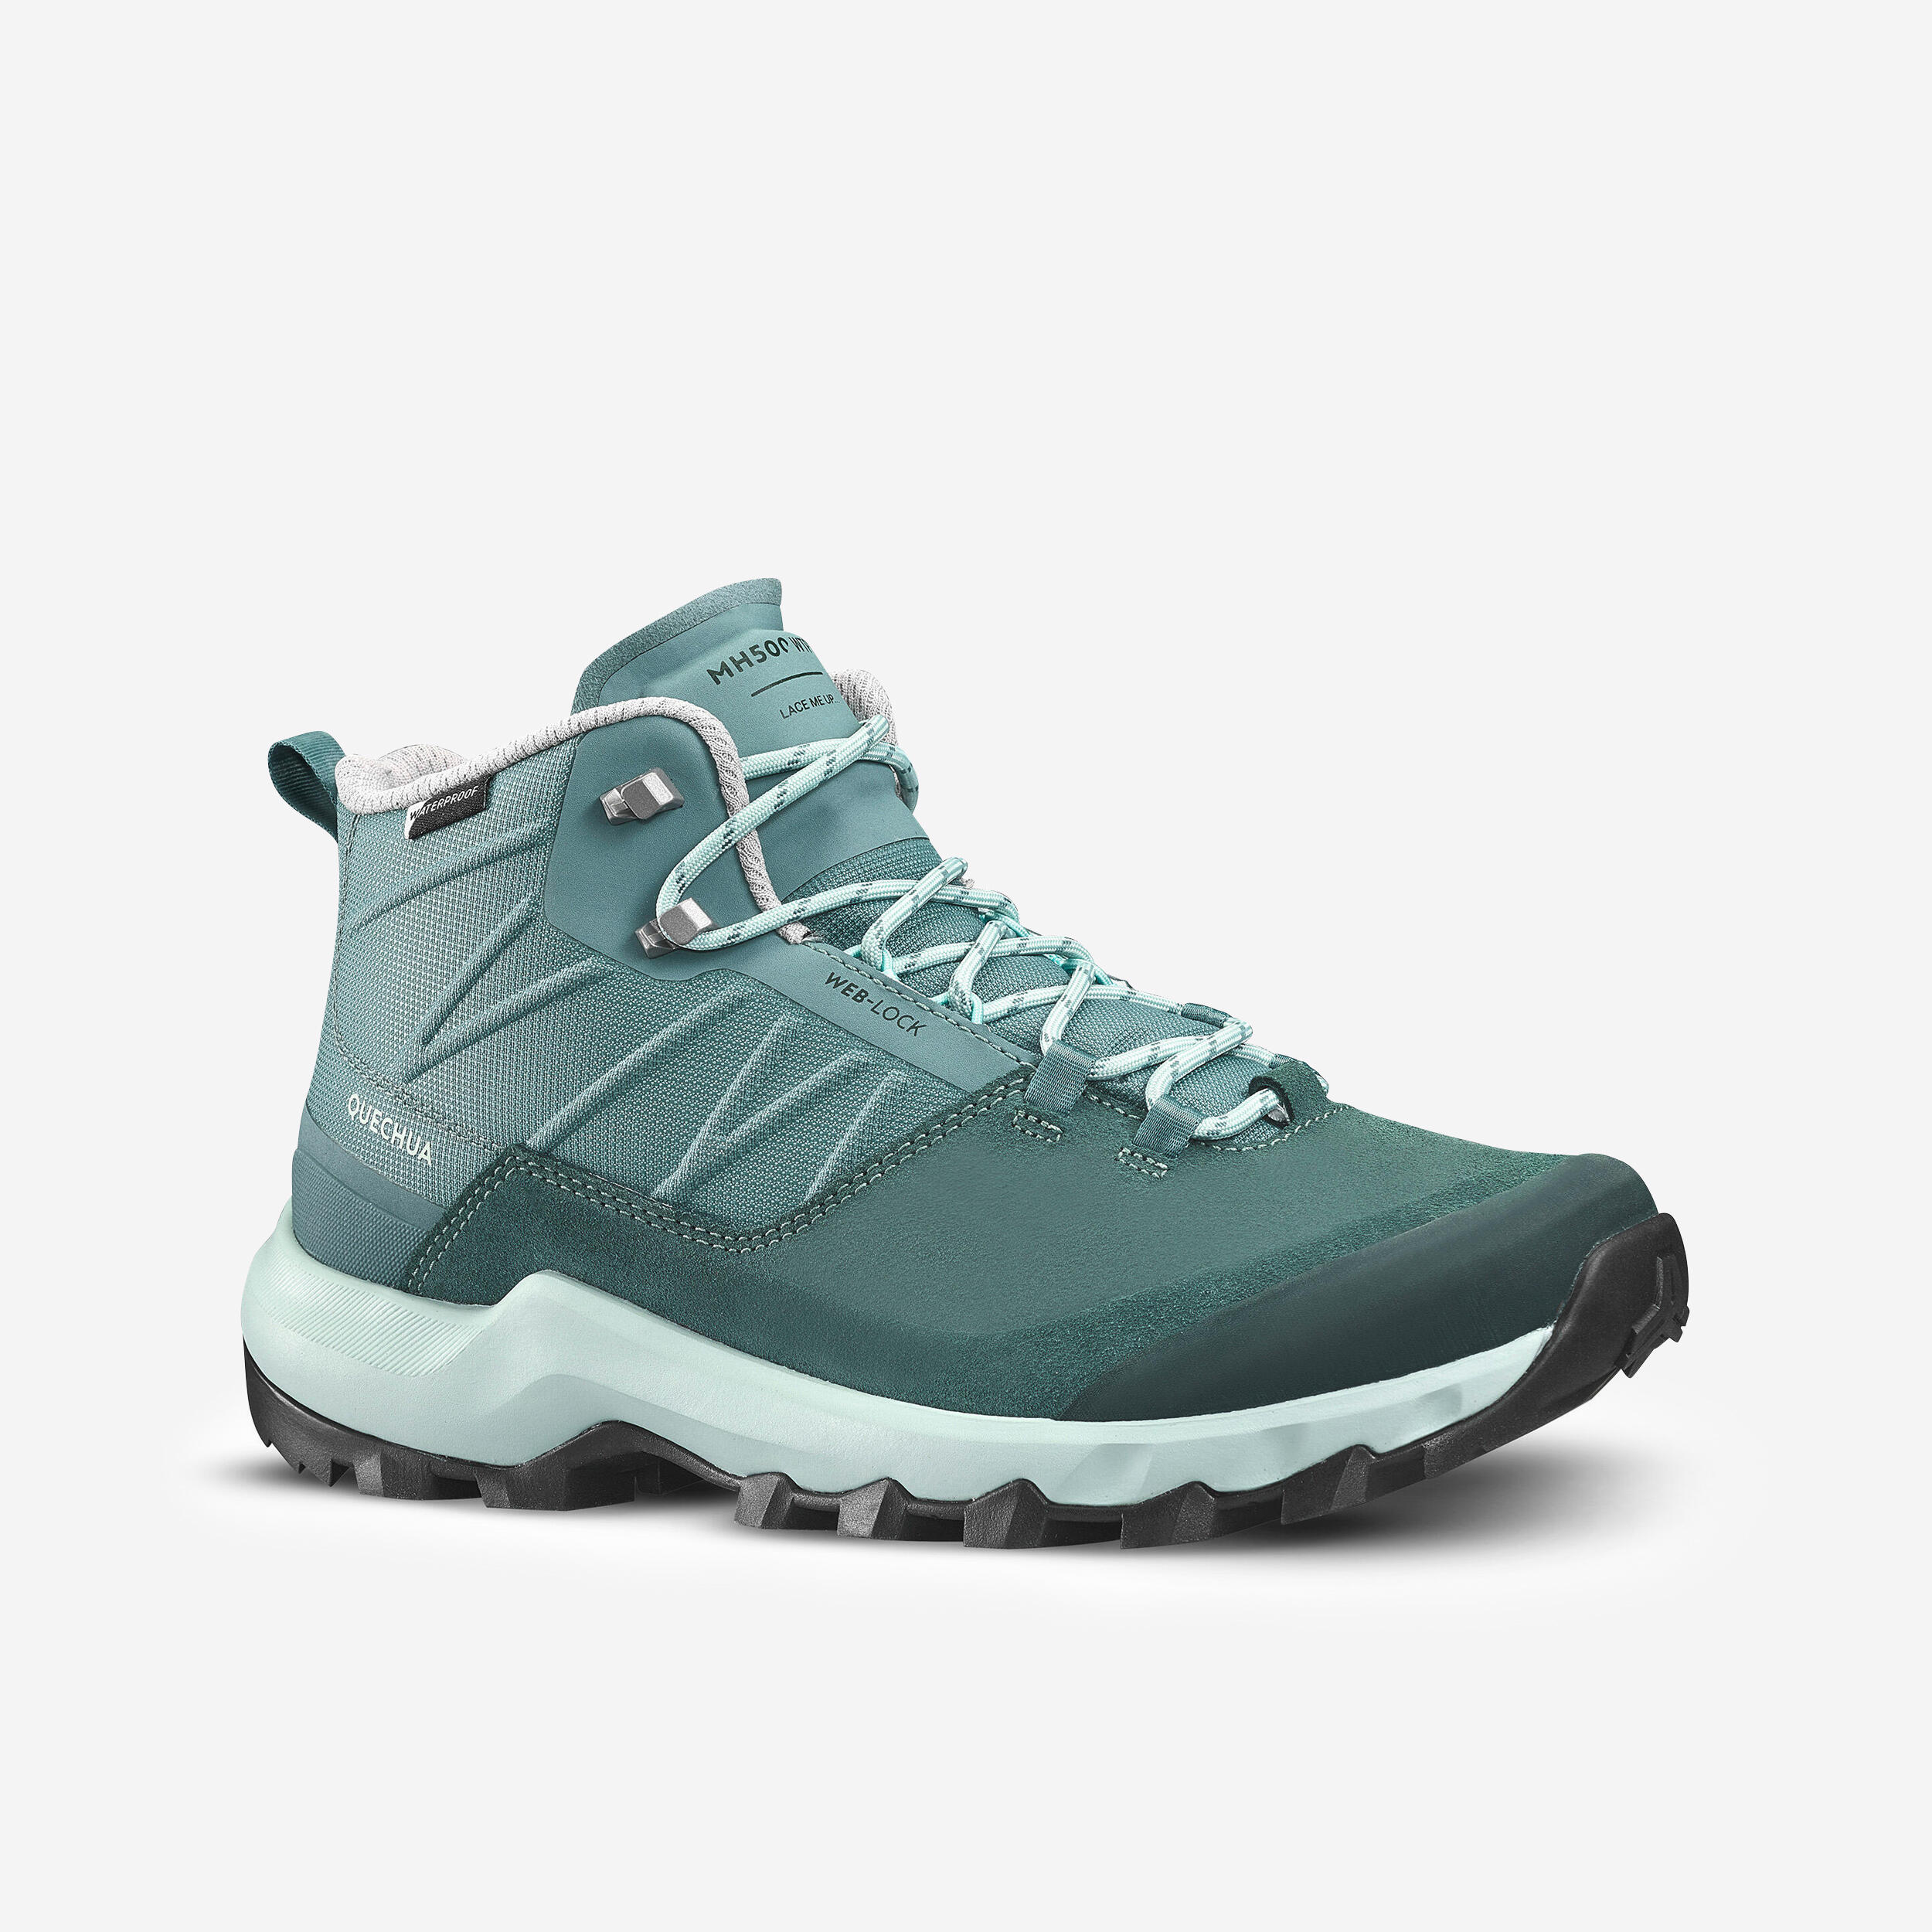 Women’s waterproof mountain walking boots - MH500 Mid - Green 1/12